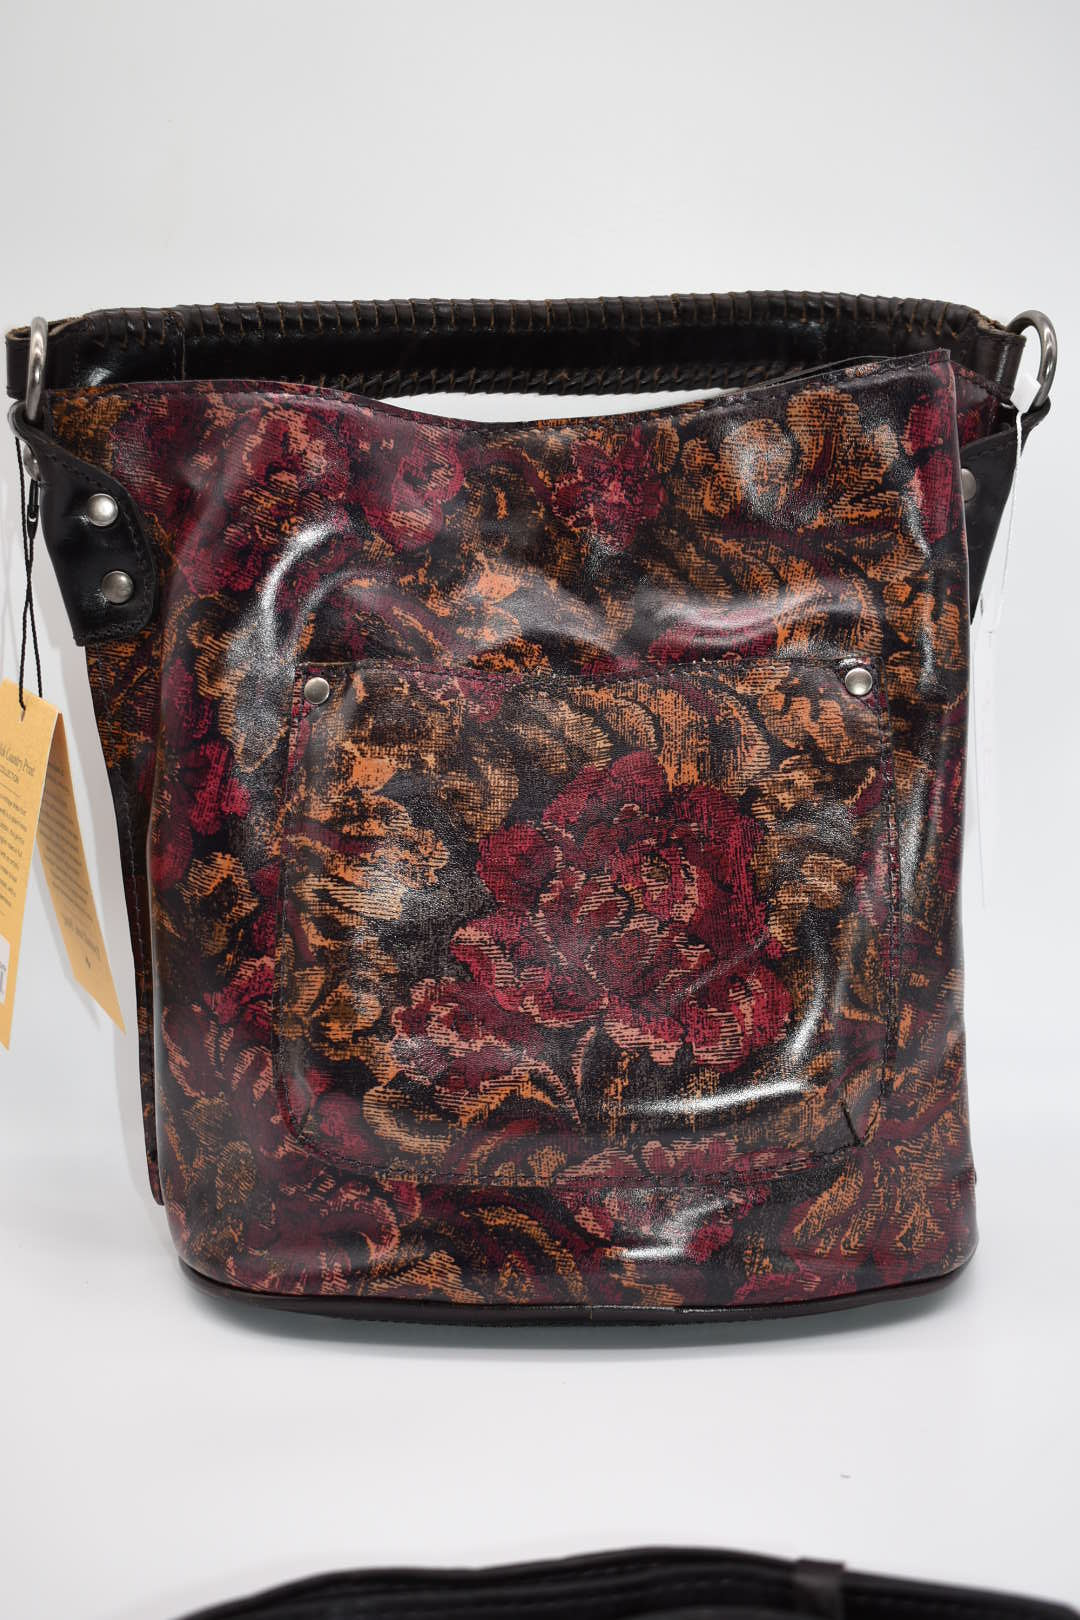 Patricia Nash Otavia Bucket Crossbody Bag in Vintage Floral Brocade